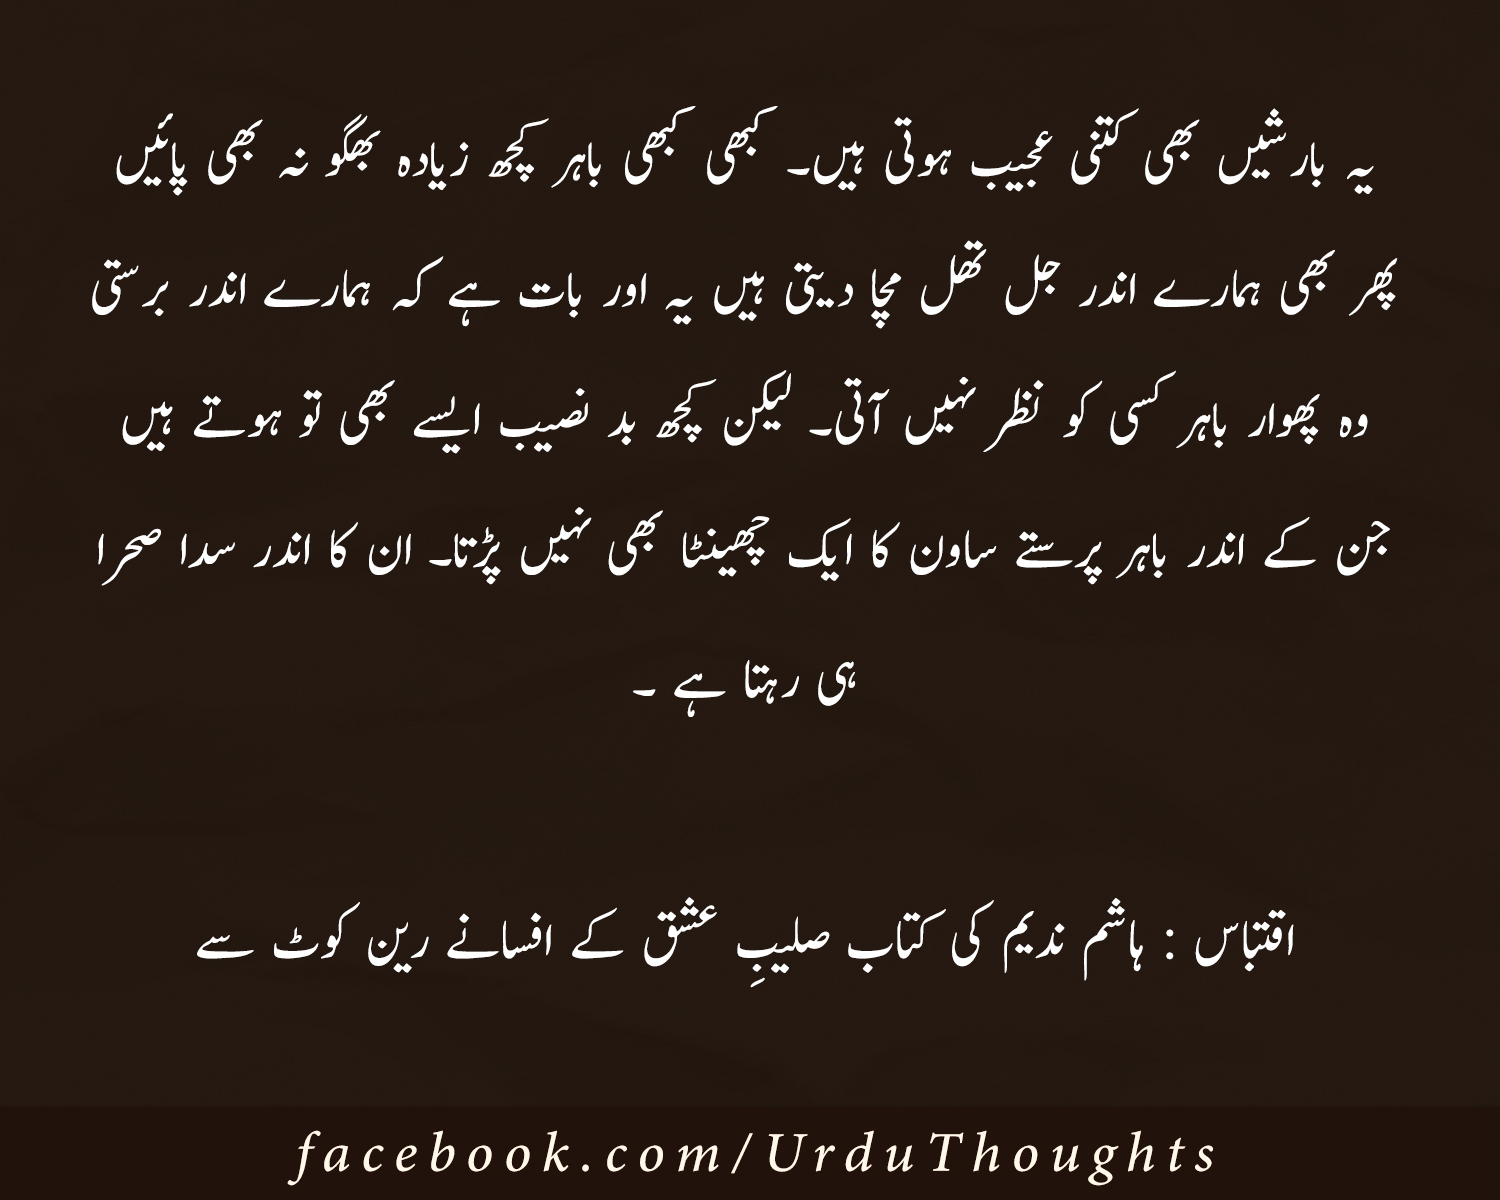 Yum urdu stories